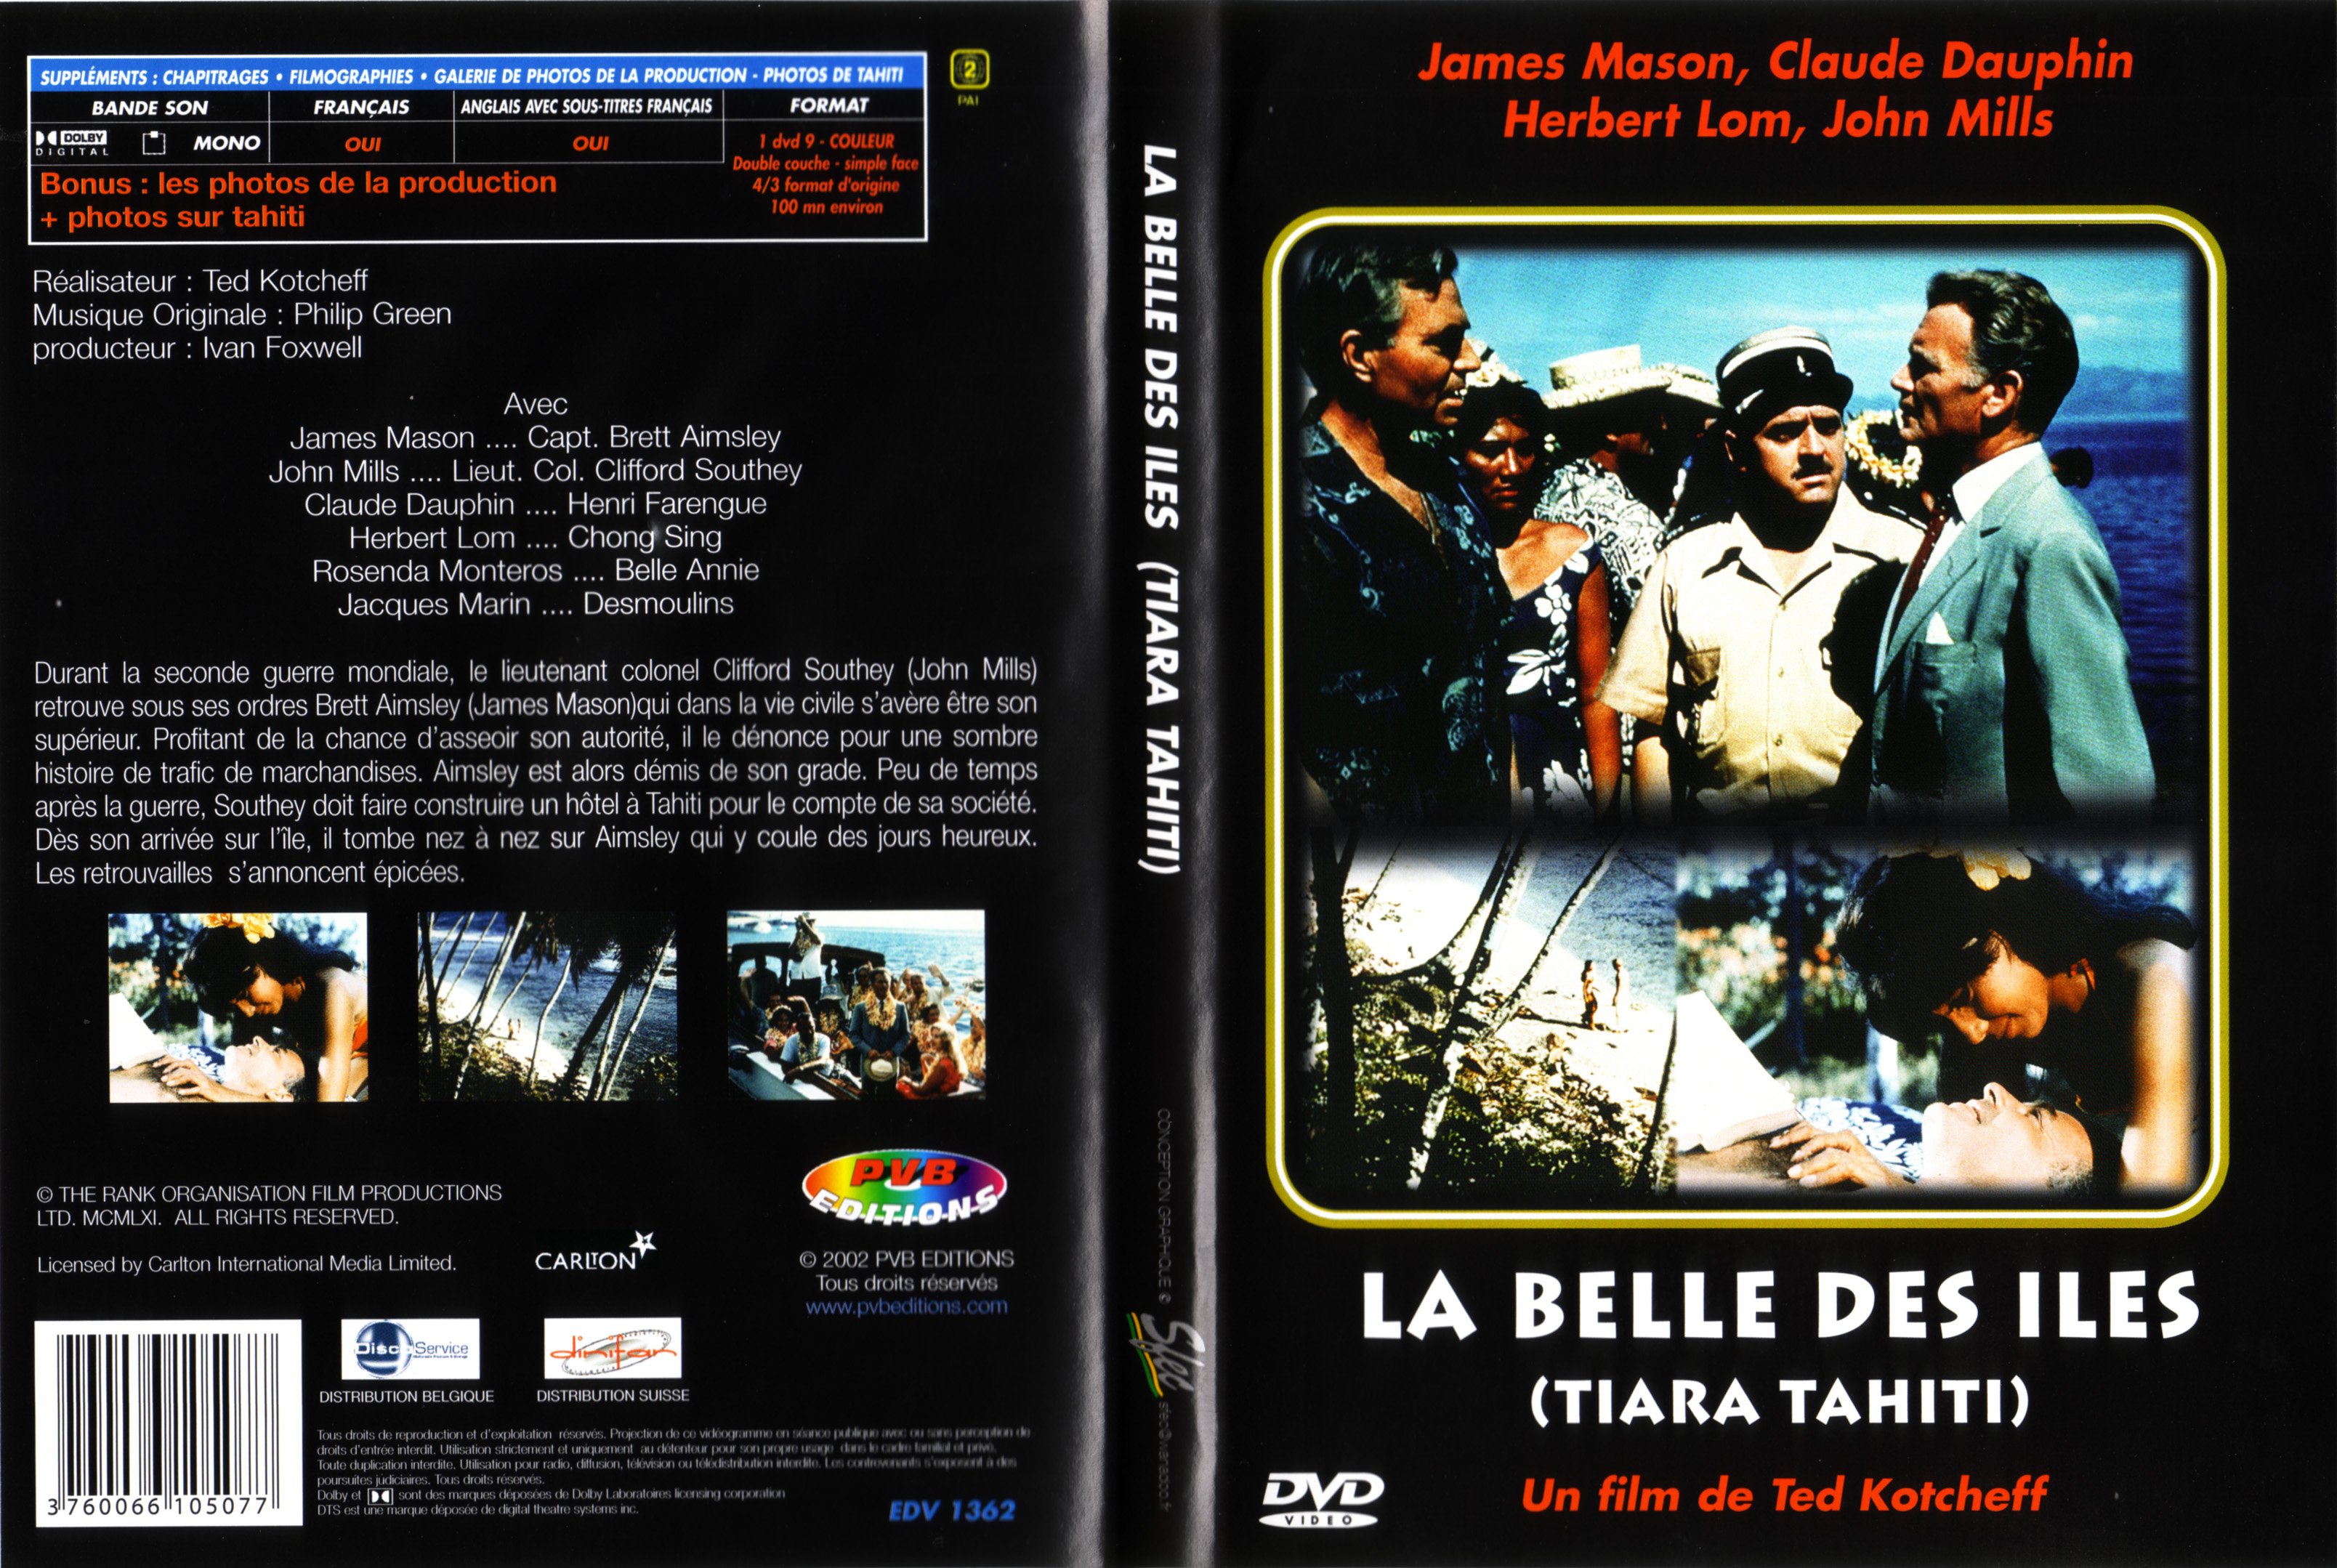 Jaquette DVD La belle des iles